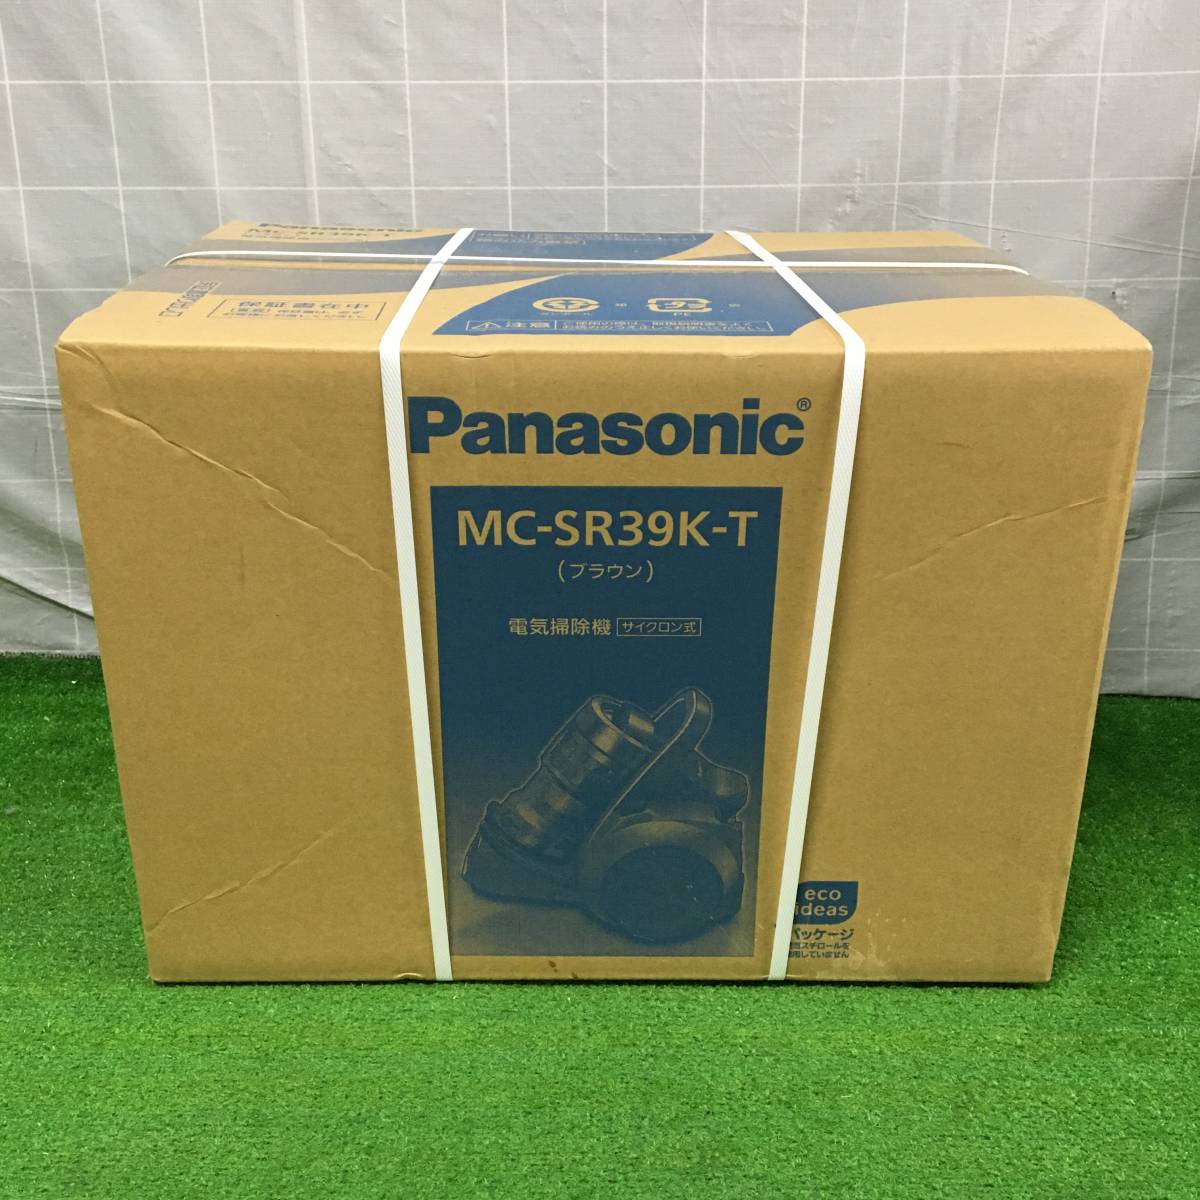 Panasonic パナソニック サイクロン式 電気掃除機 MC-SR39K-T ブラウン 